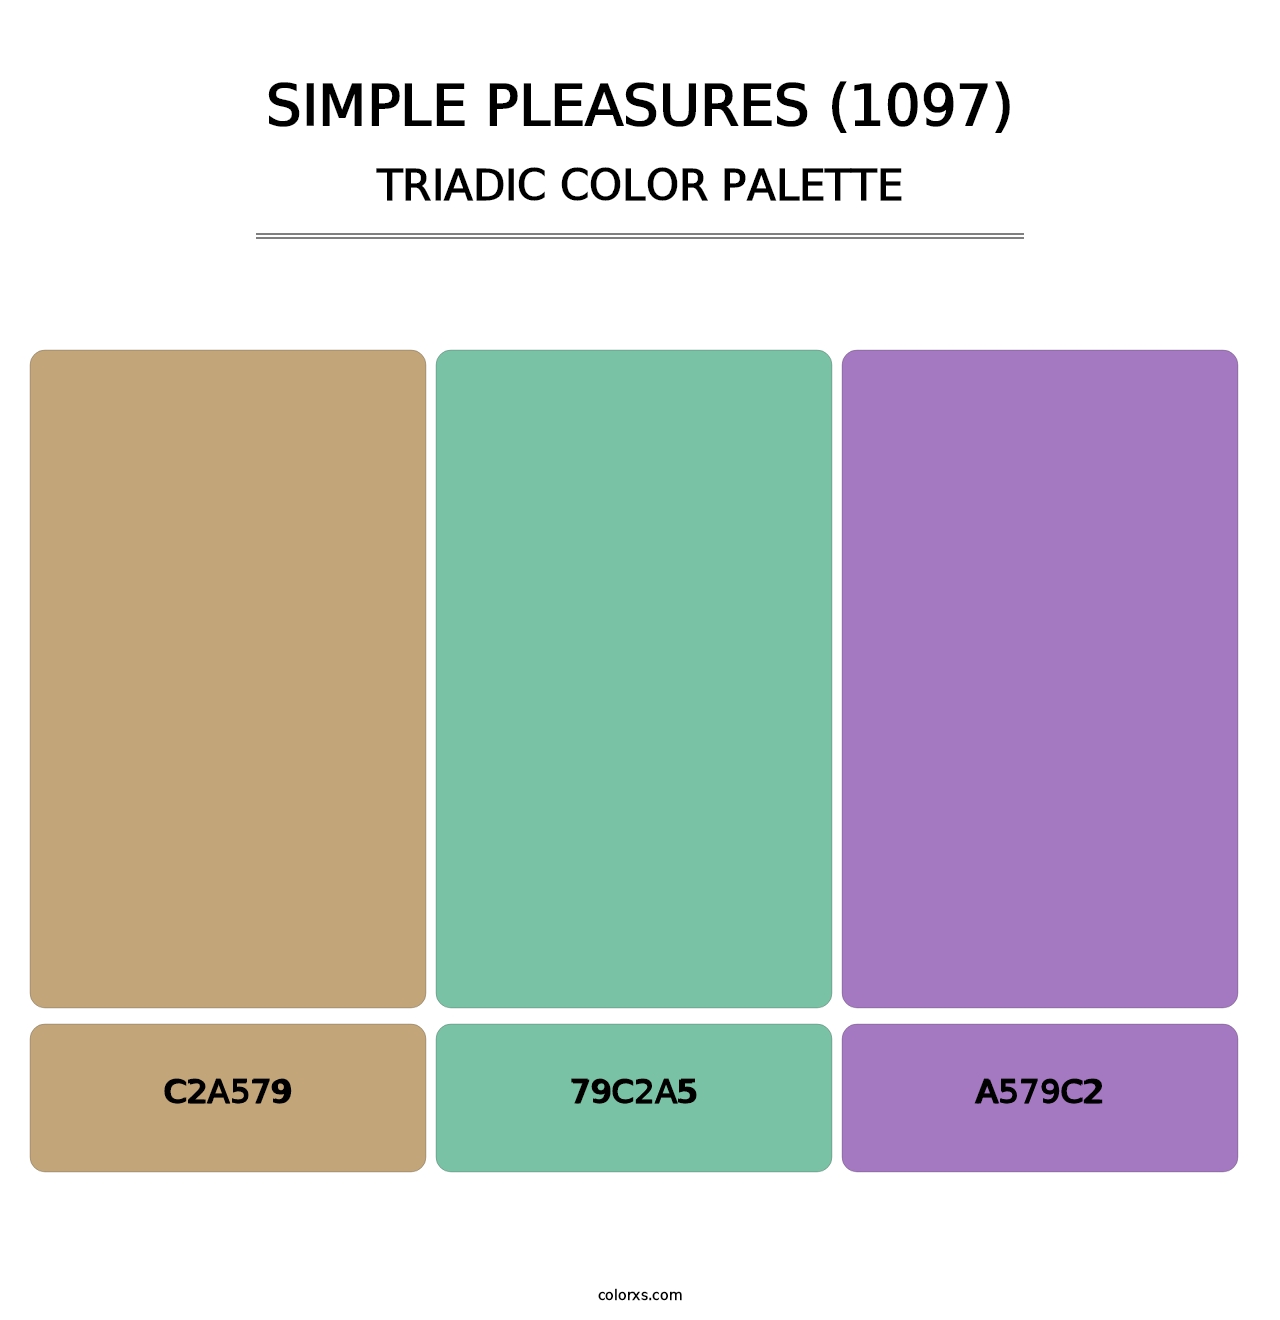 Simple Pleasures (1097) - Triadic Color Palette